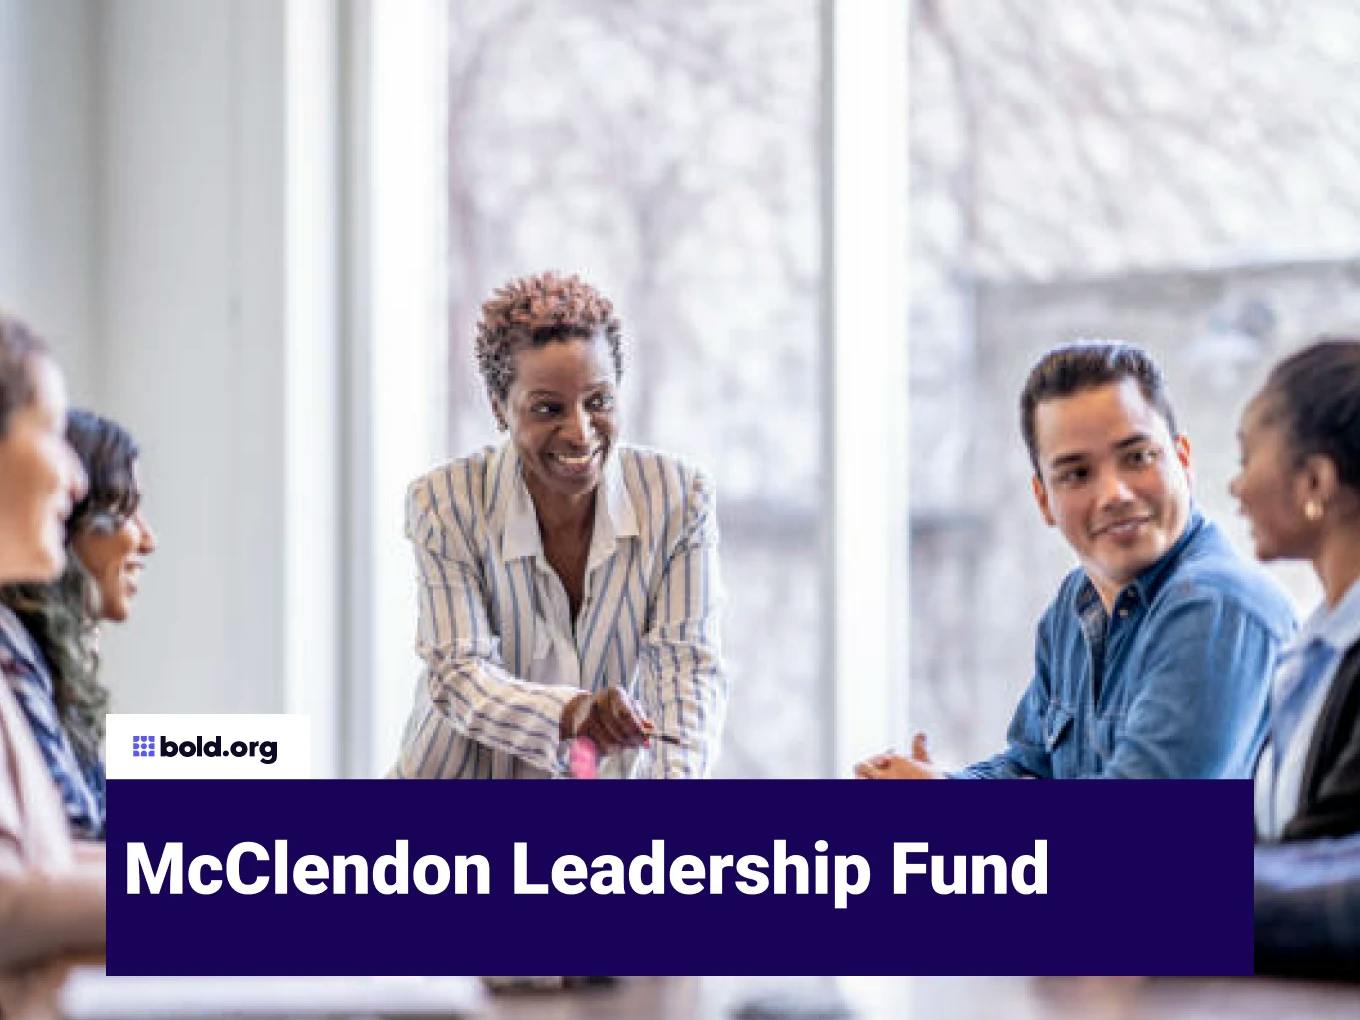 McClendon Leadership Fund